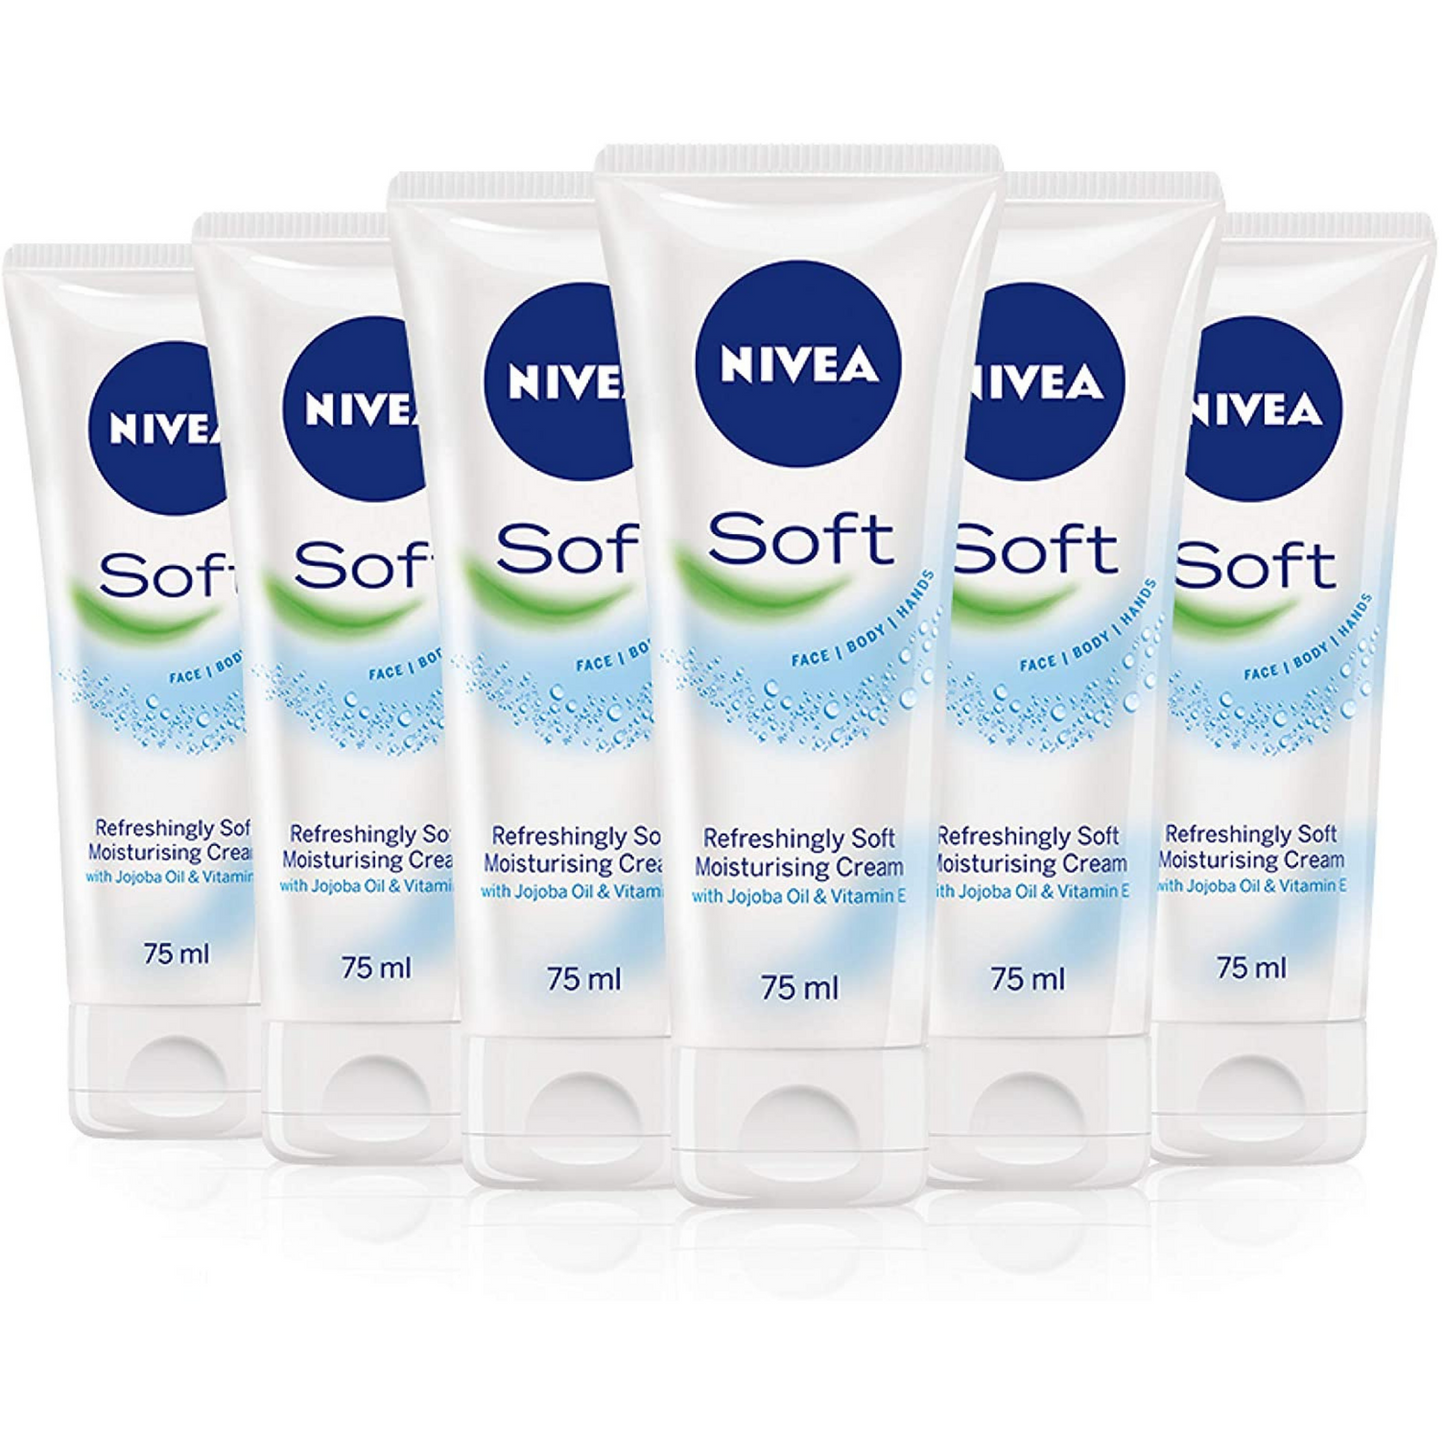 Nivea Soft - 75ml (pack of 6)